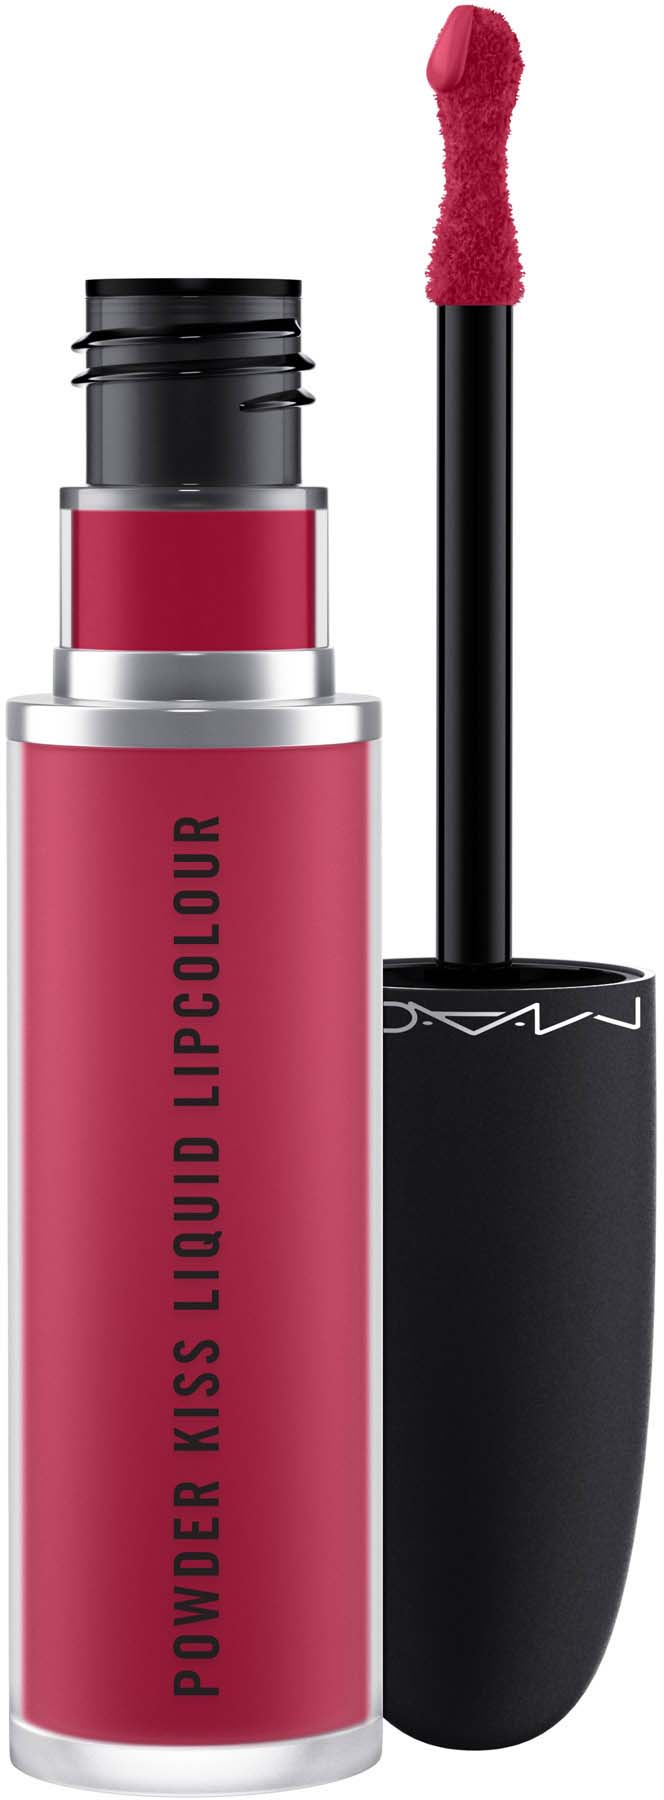 Mac Cosmetics Powder Kiss Liquid Lipcolor Elegance I